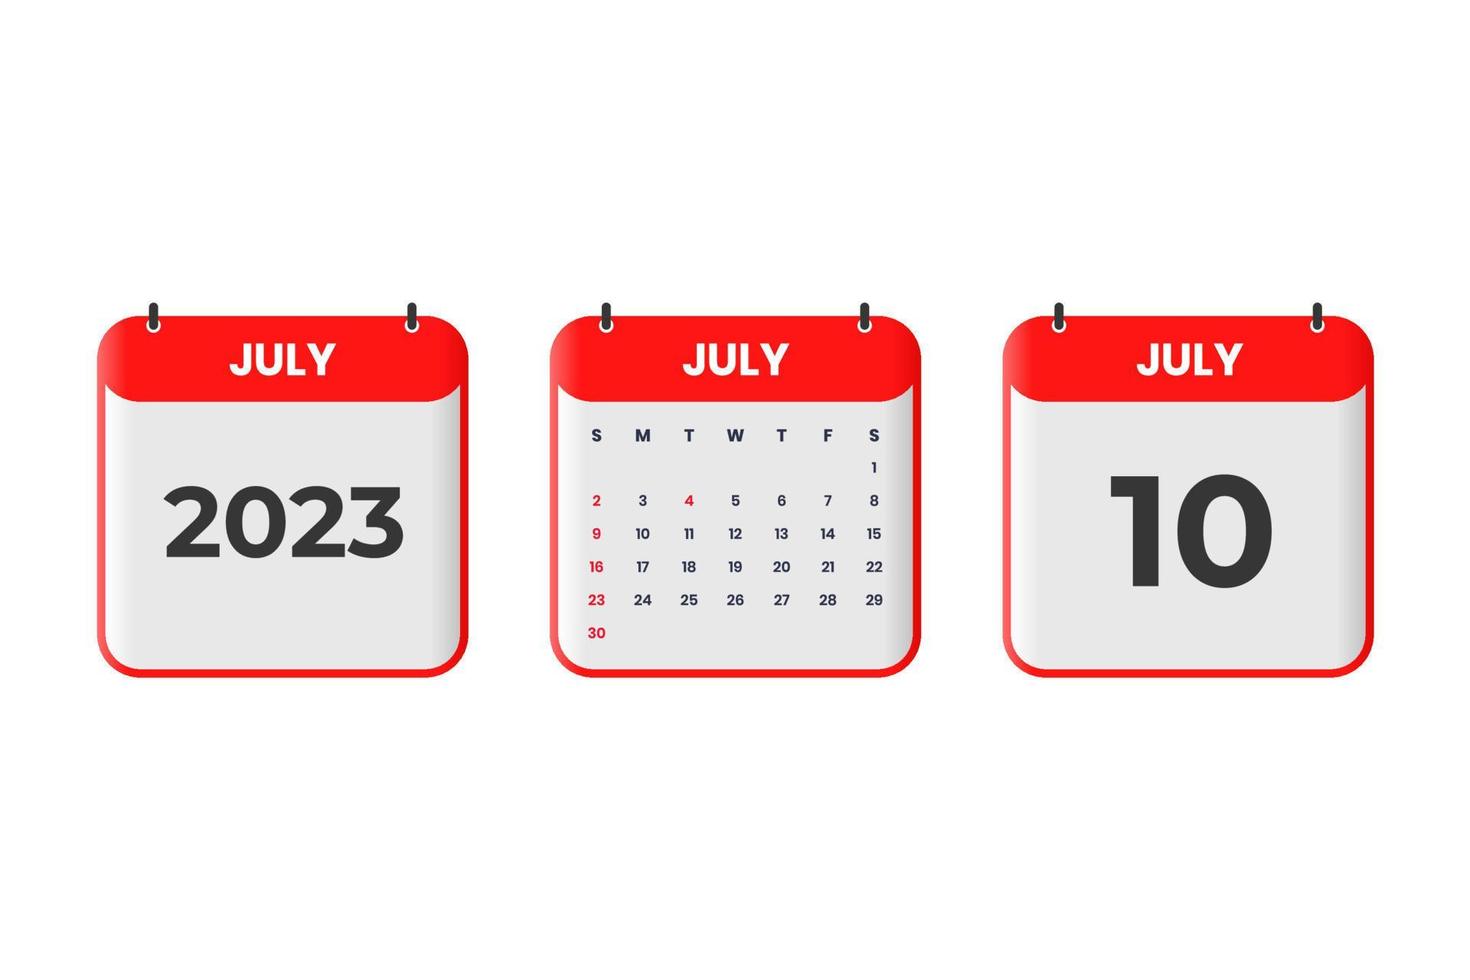 conception du calendrier de juillet 2023. 10 juillet 2023 icône de calendrier pour l'horaire, le rendez-vous, le concept de date importante vecteur